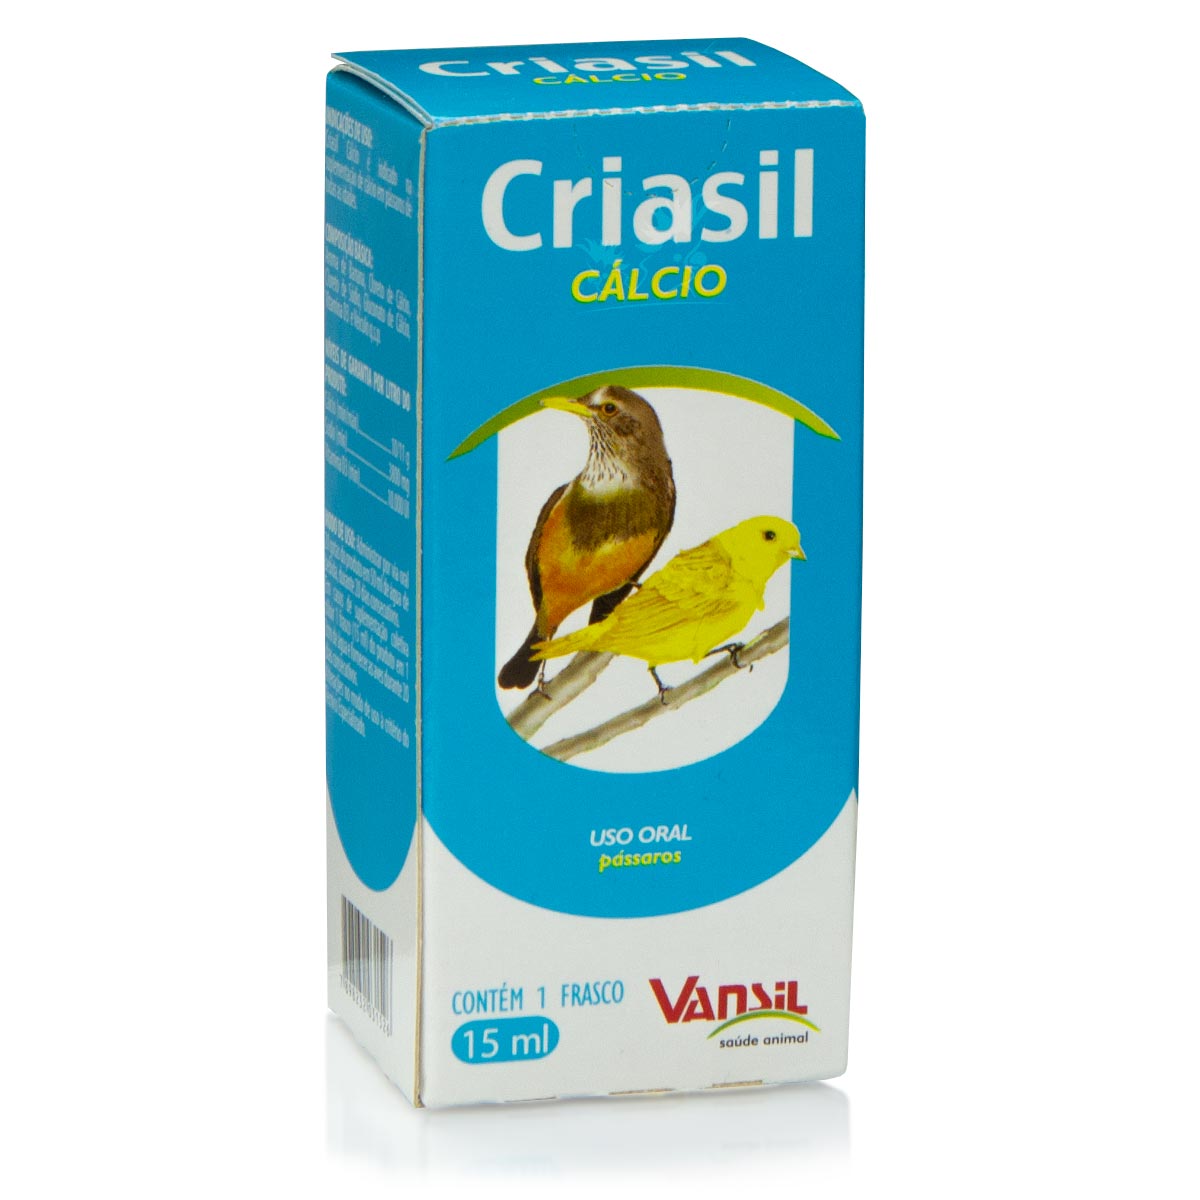 Criasil Cálcio - 15ml